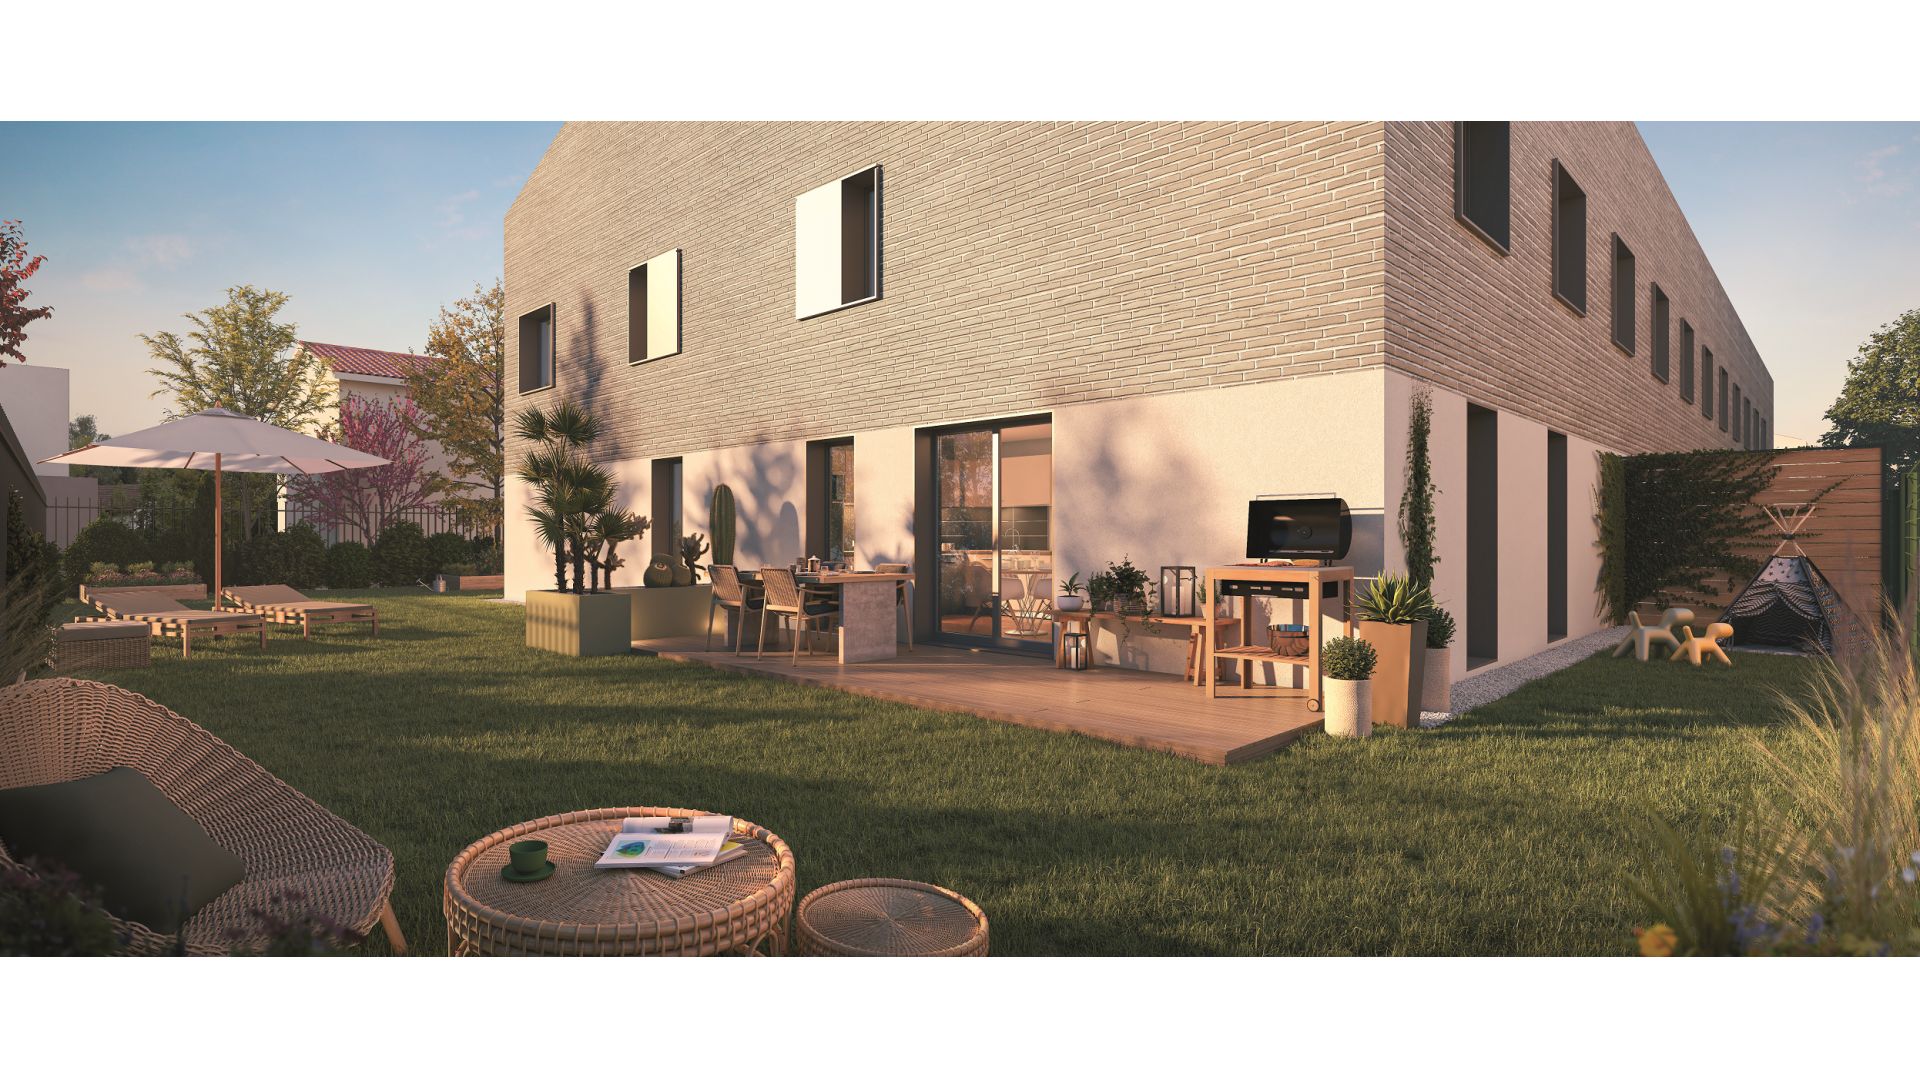 Greencity immobilier - achat appartements neufs du T2 au T5 - Résidence Le Clairbois - 31270 Cugnaux